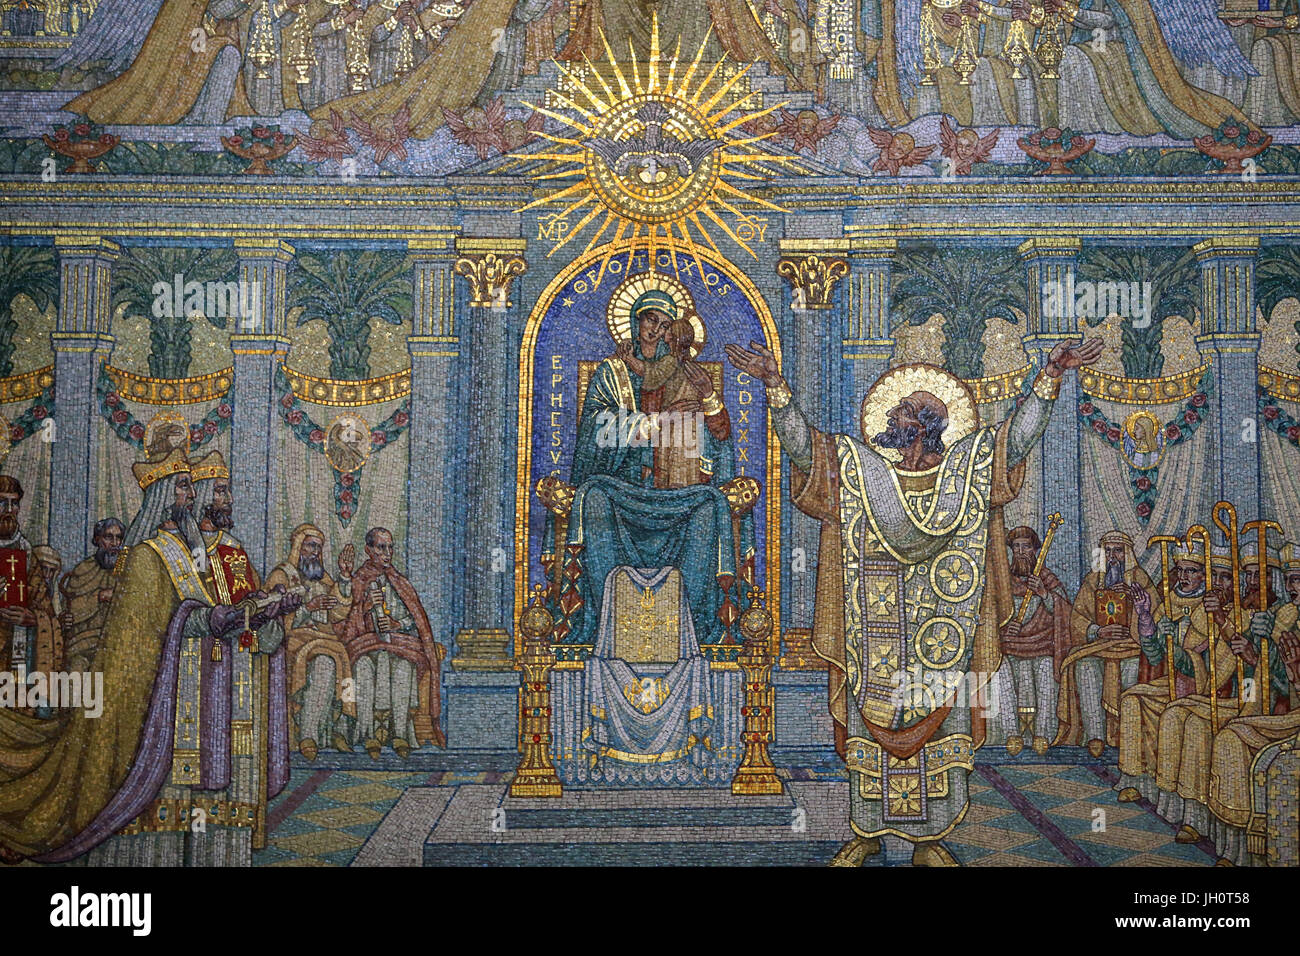 Der Rat von Ephesus. Mosaik Wandbild von Martin von Paris Werkstätten ausgeführt. Basilika von Notre-Dame de Fourvi re. Lyon. Stockfoto